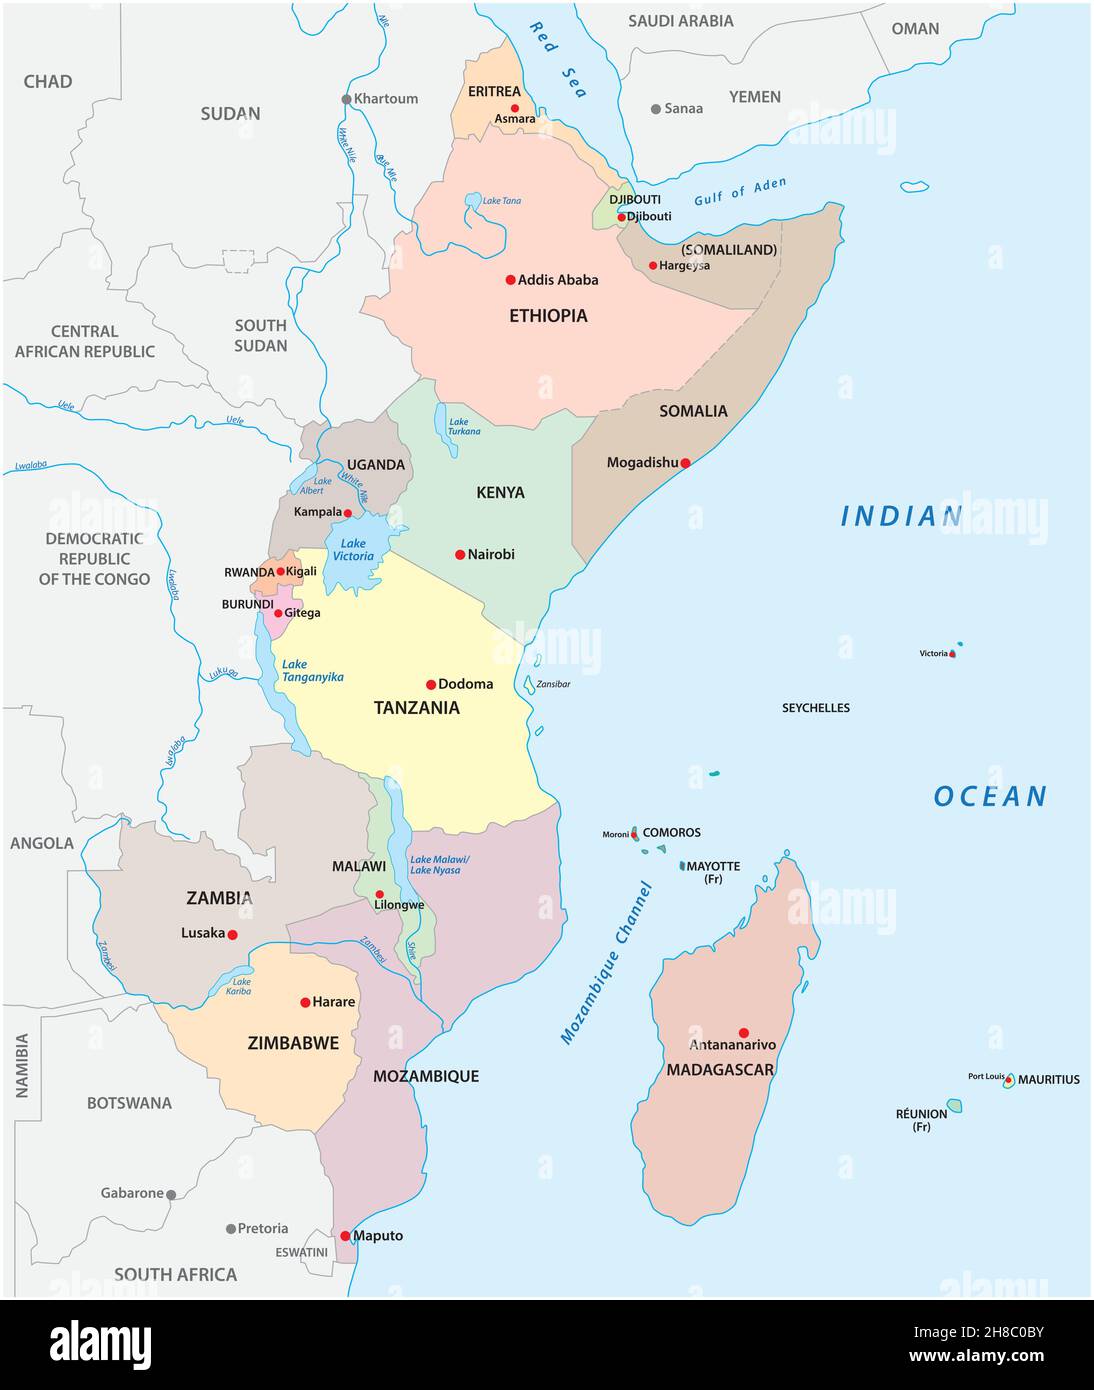 carte vectorielle politique de la région de l'afrique de l'est Illustration de Vecteur